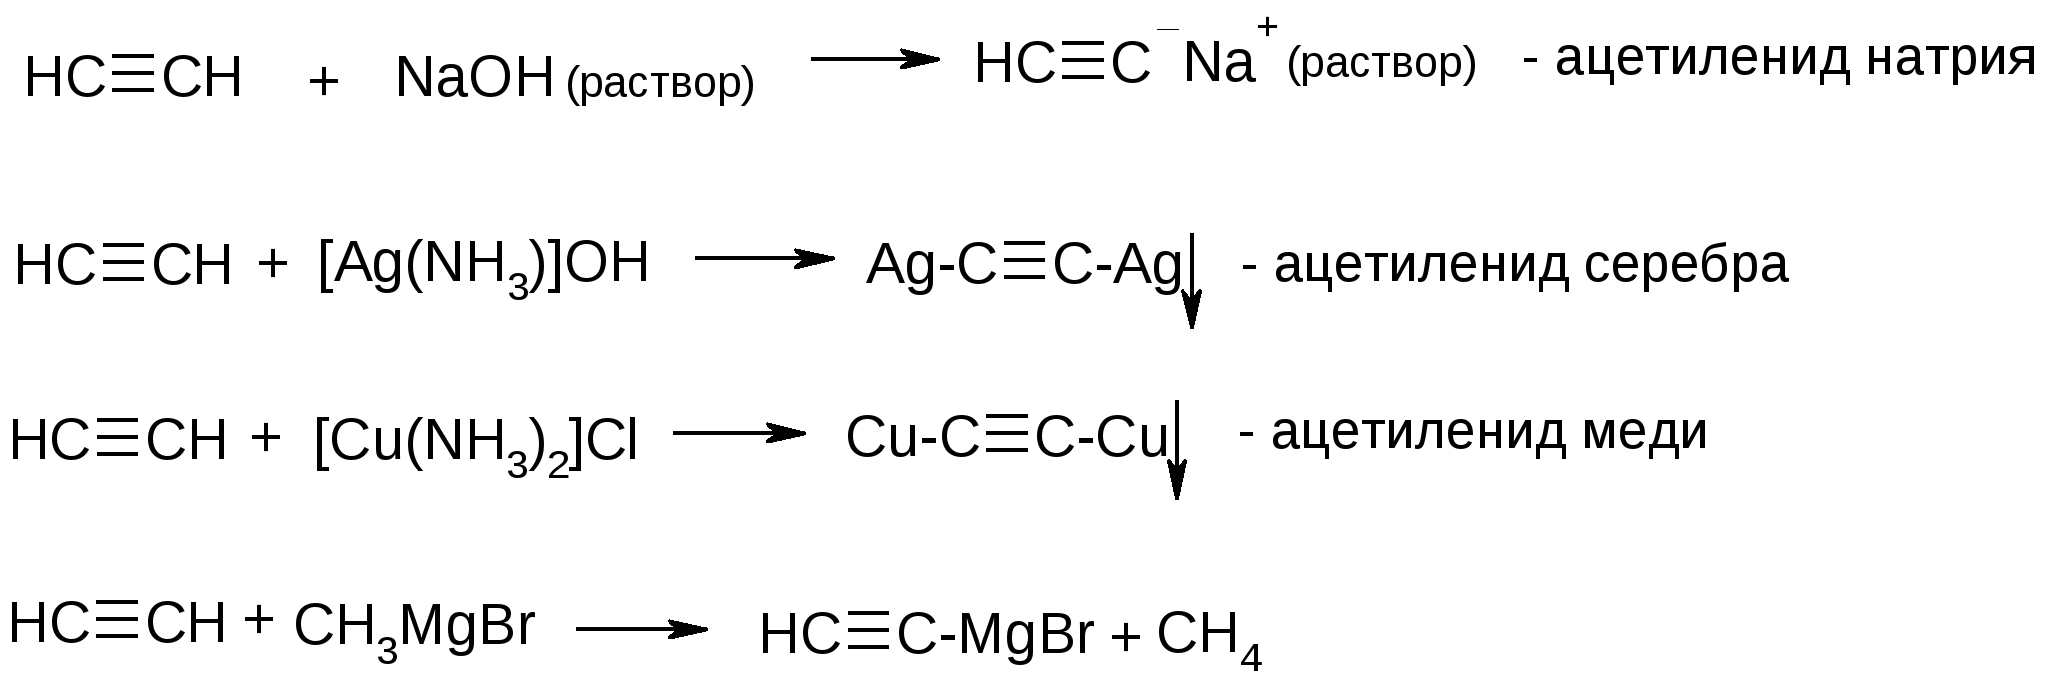 Этаналь naoh. Ацетиленид серебра получение реакция. Получение ацетиленида натрия реакция. Ацетилен плюс гидроксид натрия. Ацетиленид натрия получение.